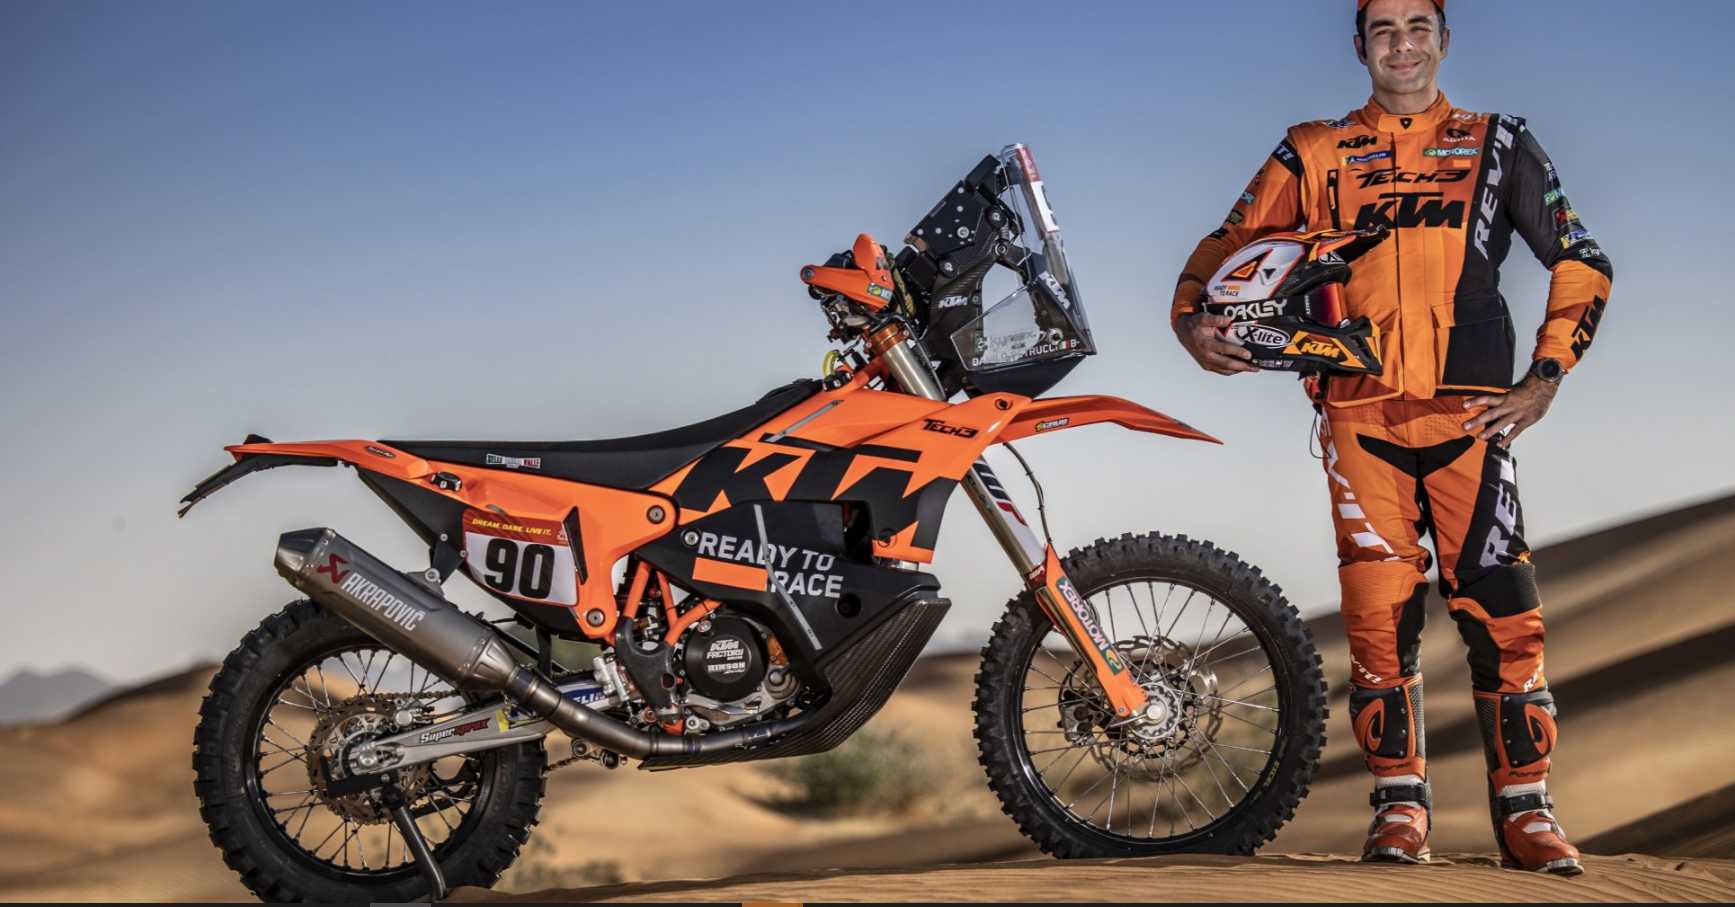 Данило Петруччи подтвердил сенсационный переход в MotoGP Dakar в 2022 году